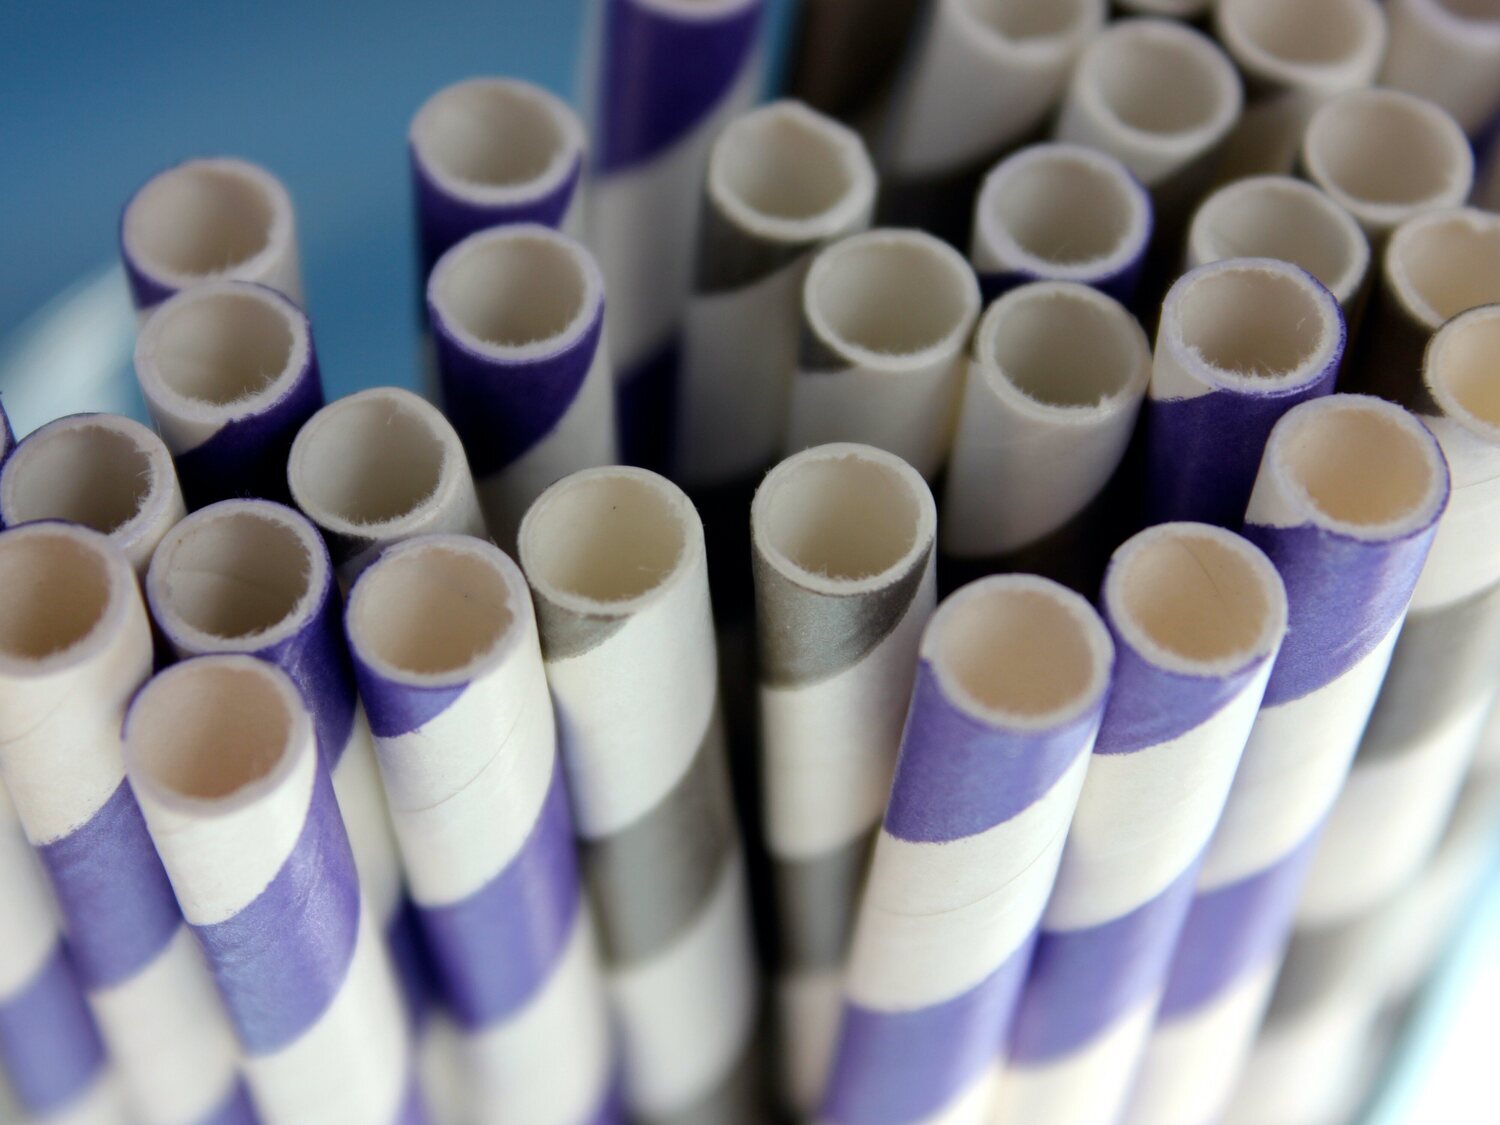 Las pajitas de papel contienen sustancias tóxicas, según un estudio